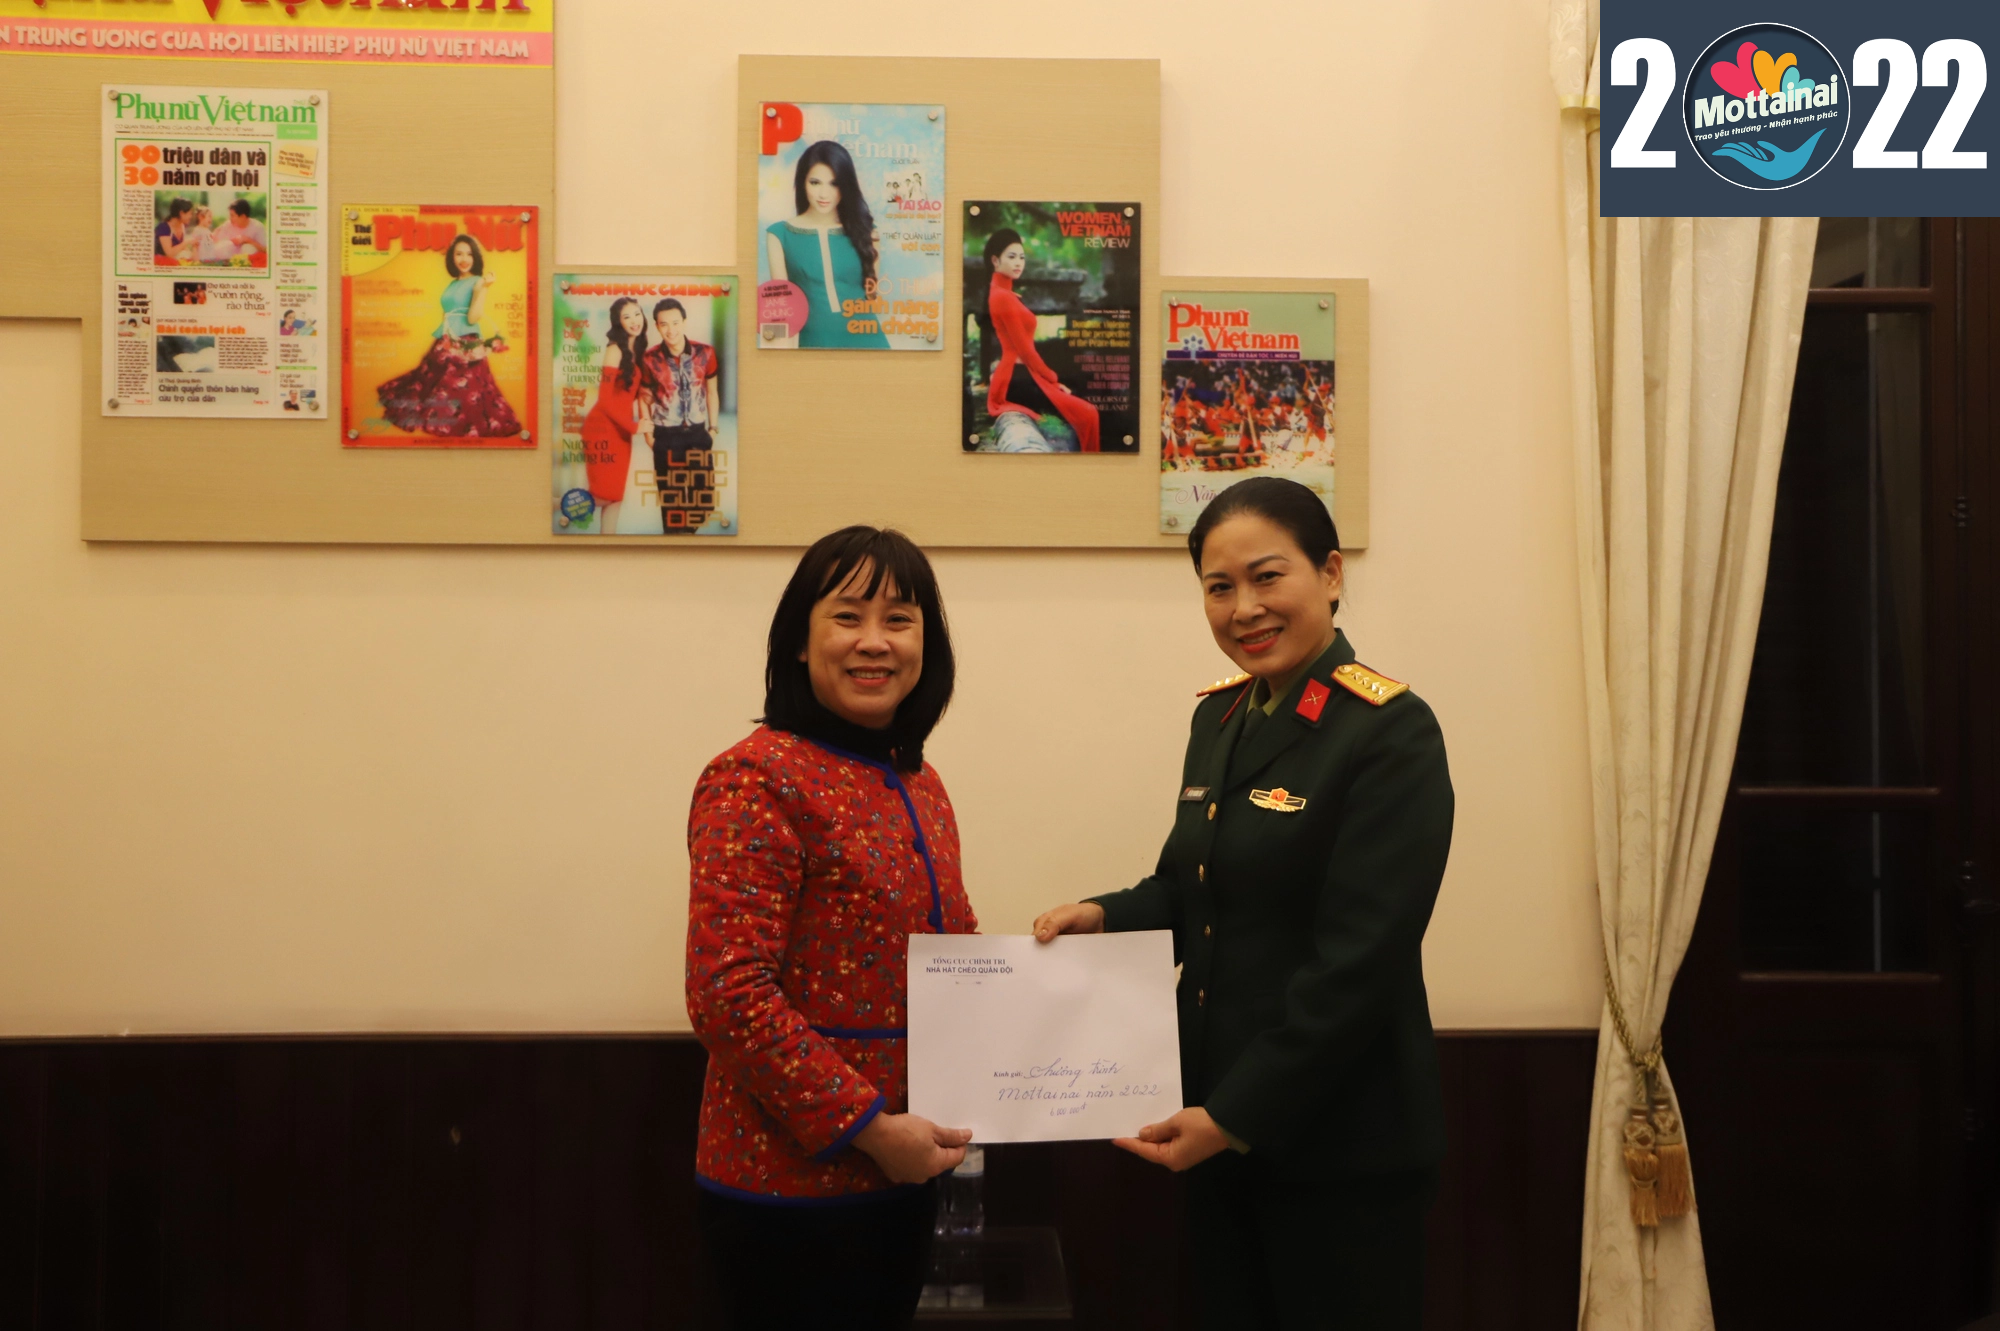 Nhà hát Chèo Quân đội ủng hộ chương trình Mottainai 2022 - Ảnh 2.